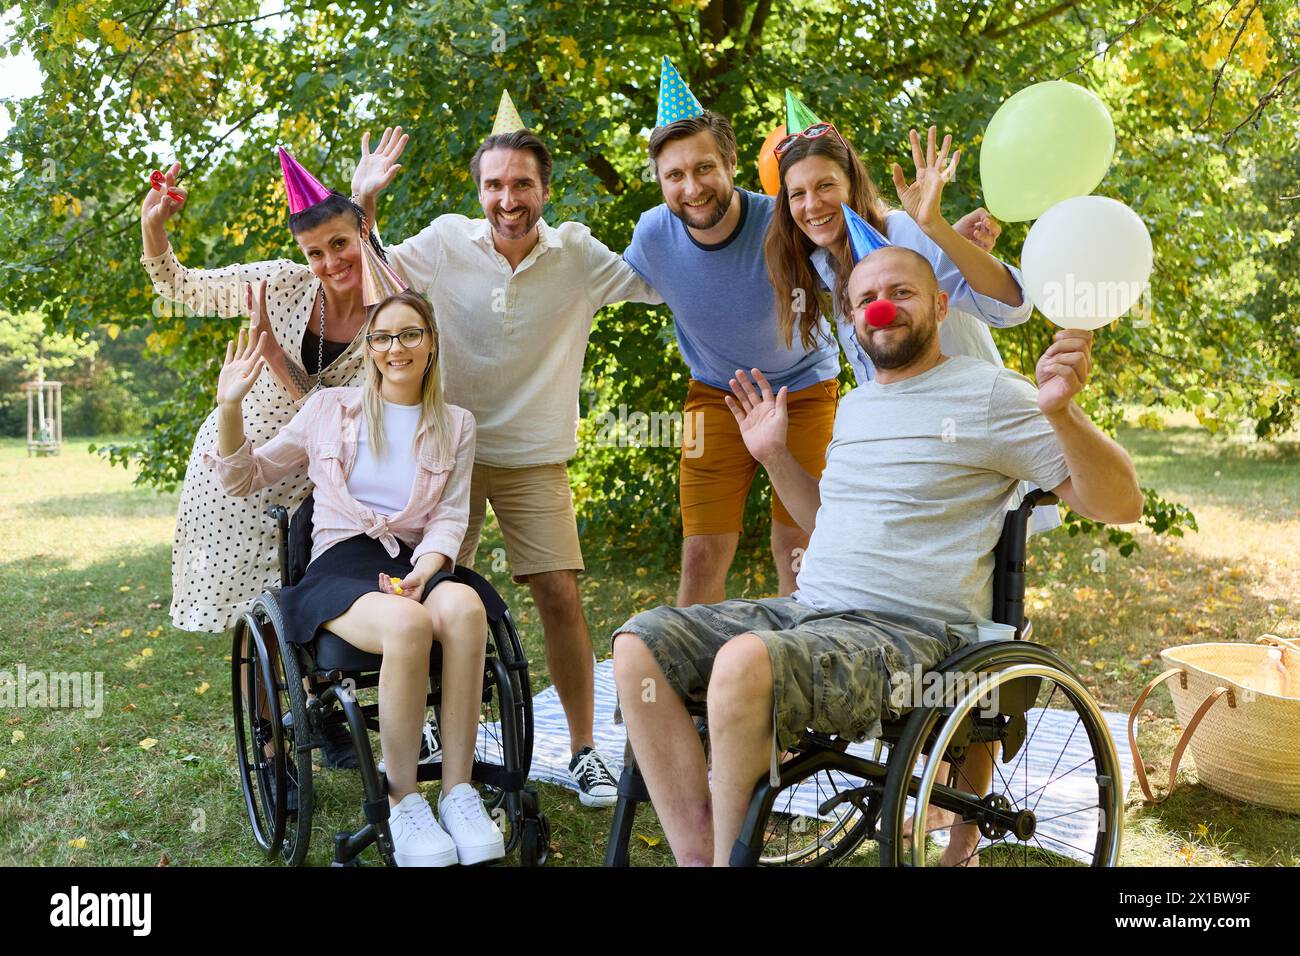 Un gruppo di amici, tra cui persone su sedia a rotelle, partecipa a una vivace festa all'aperto con palloncini, celebrando l'inclusione e la gioia in un lussureggiante set del parco Foto Stock